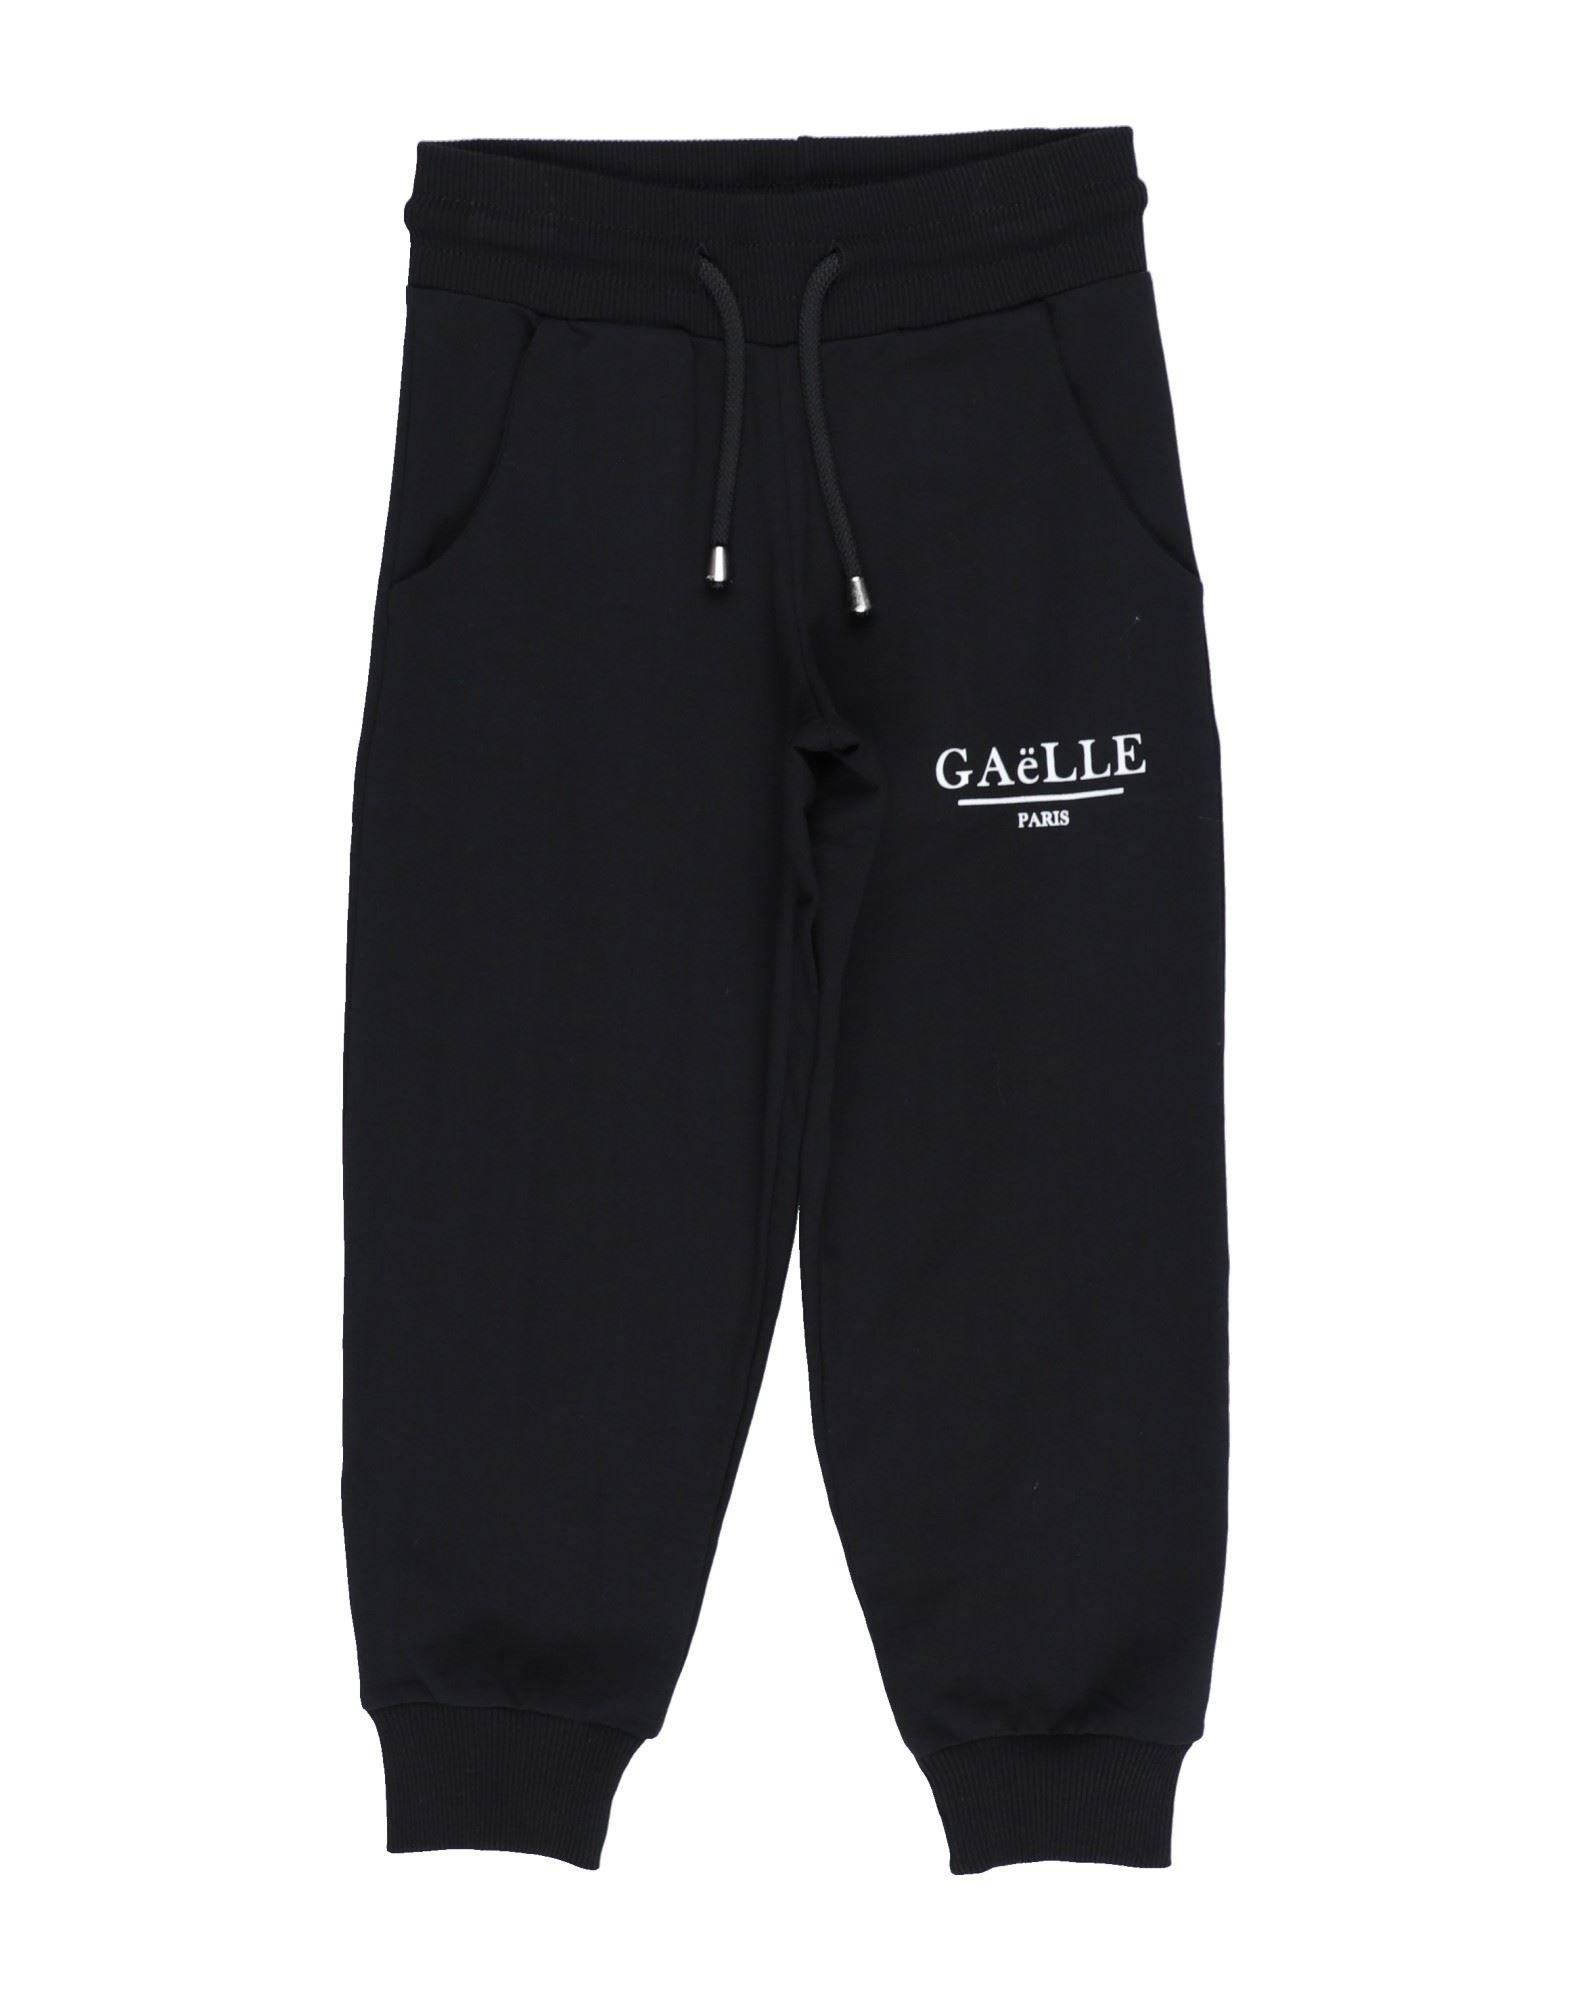 Gaelle Paris Kids' Pants In Black